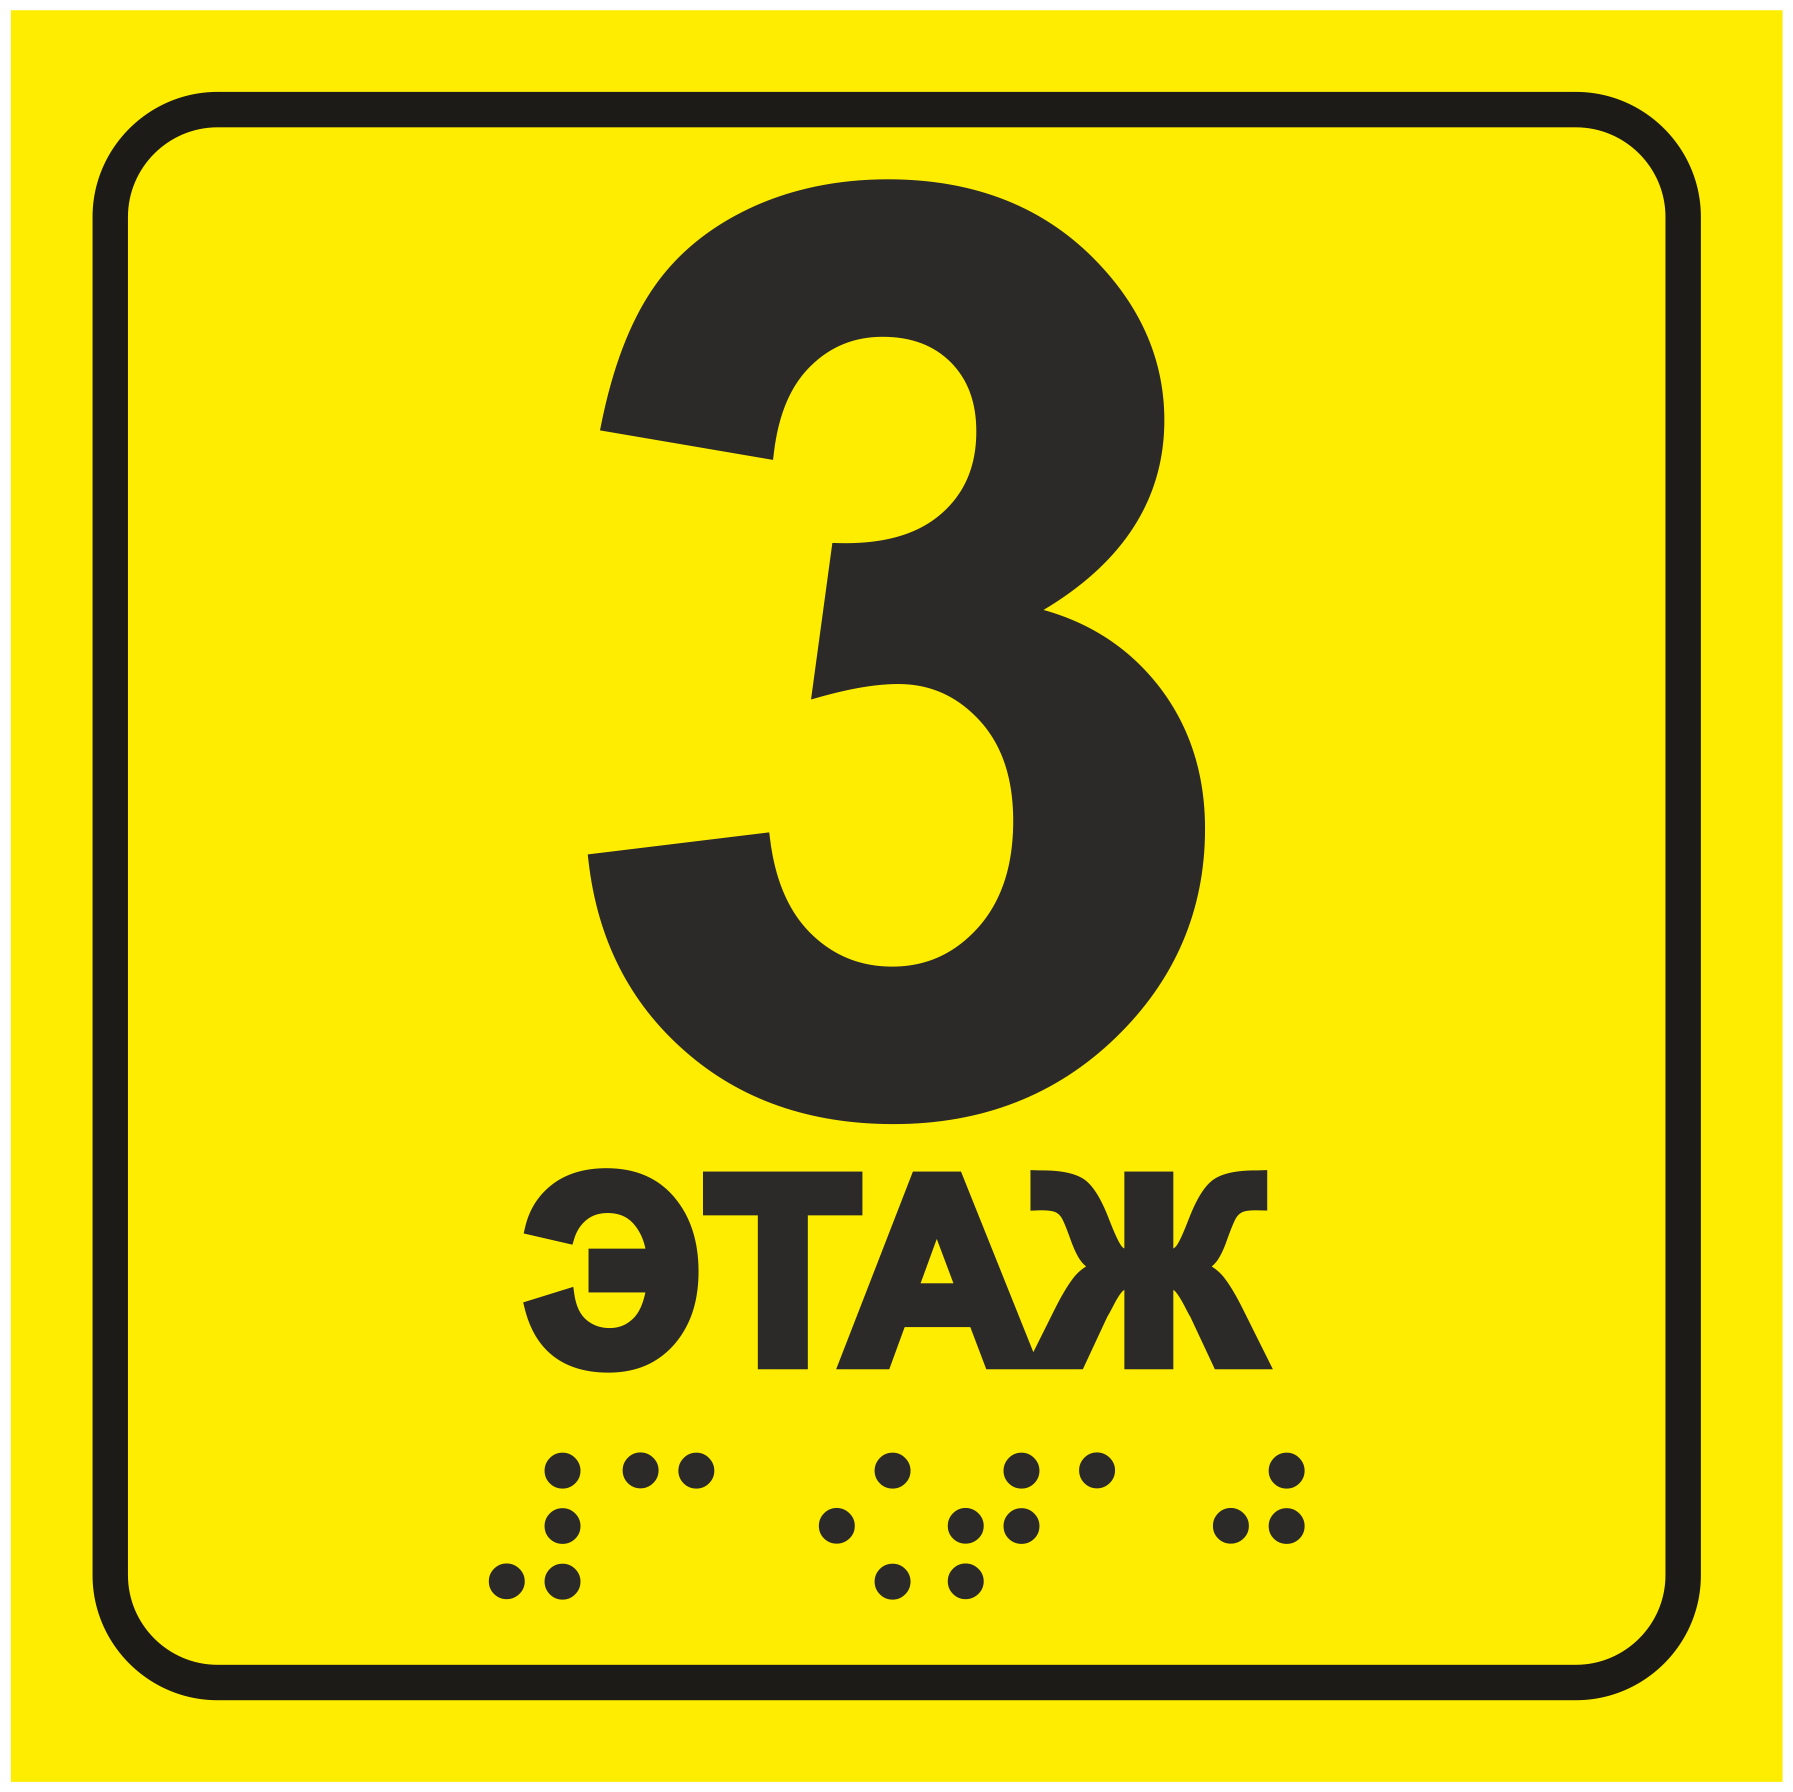 Тактильная табличка со шрифтом Брайля "Этаж №3" 150х150мм для инвалидов. "Доступная среда" по ГОСТ 52131-2019 (Всё объёмное выпуклое) ПВХ 3-5 мм (ЕФ)